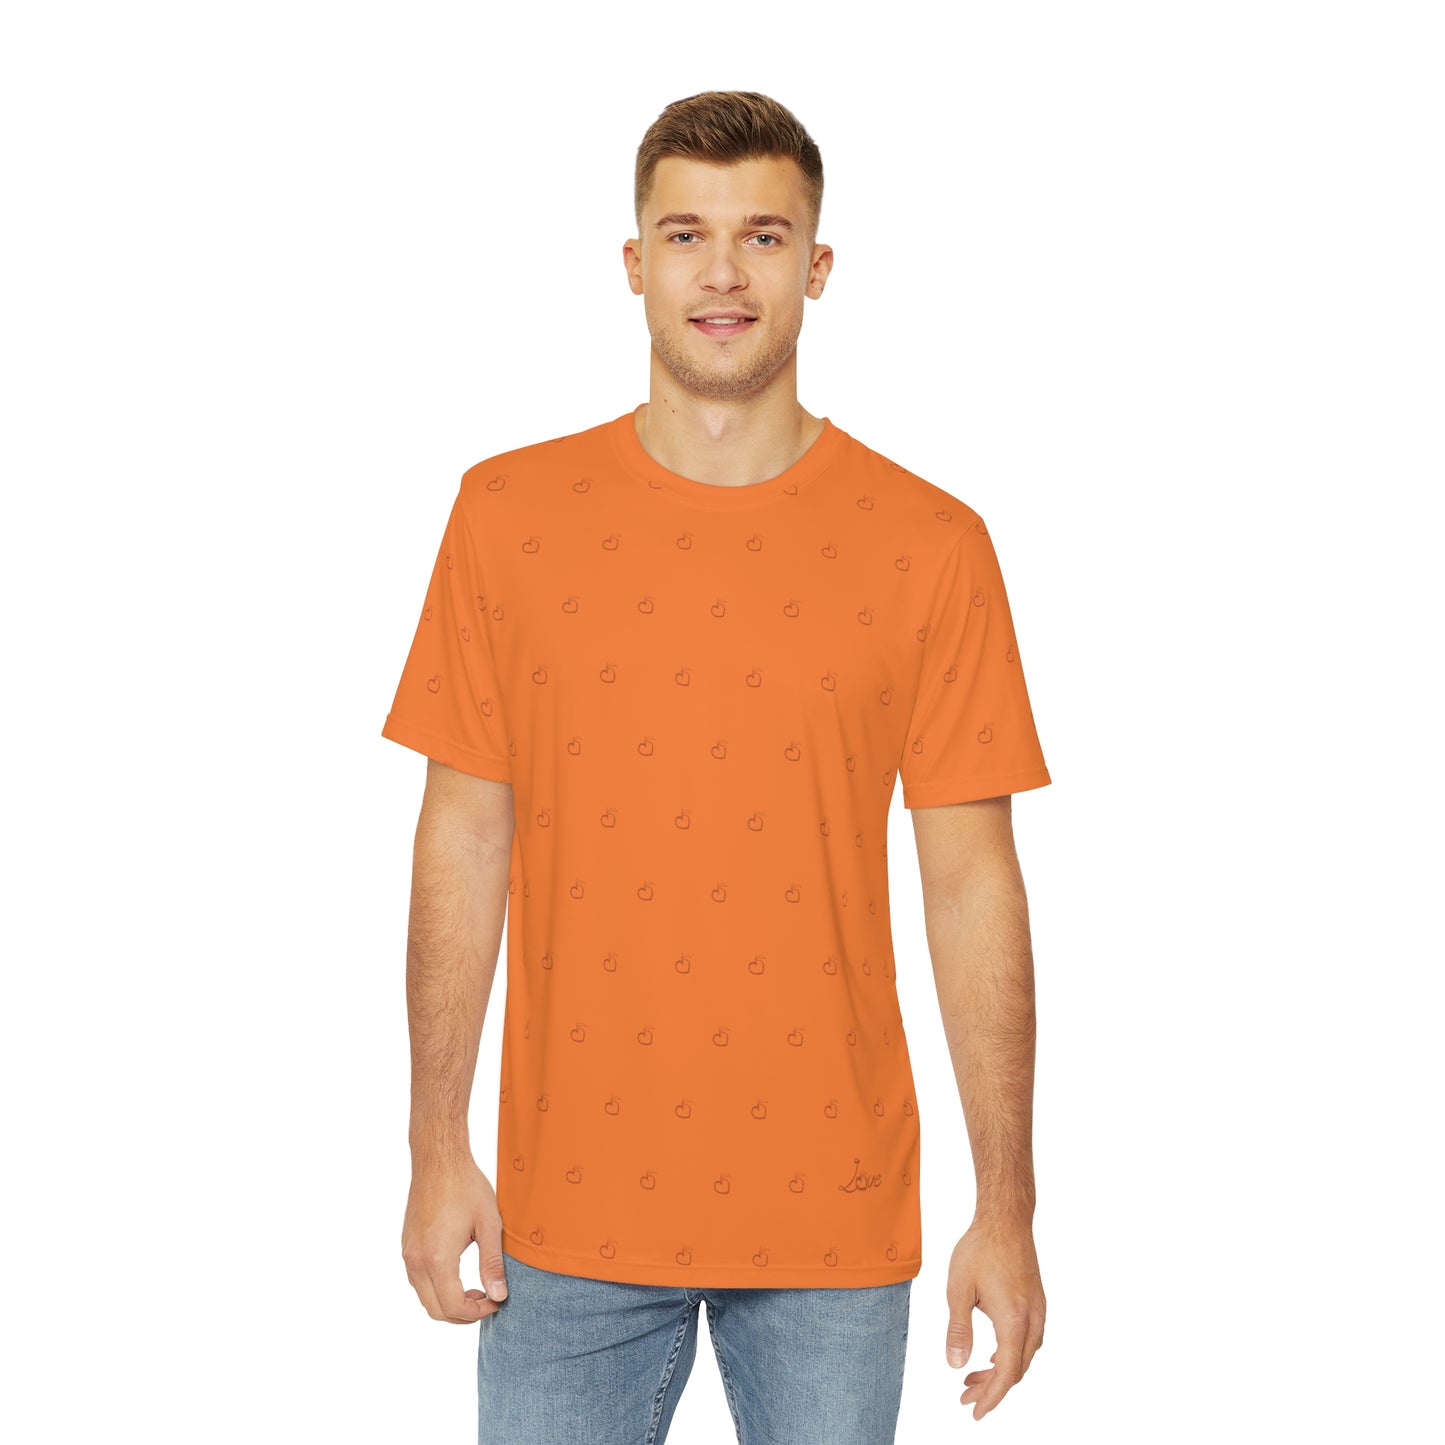 Love Men's T-Shirt (Peach)